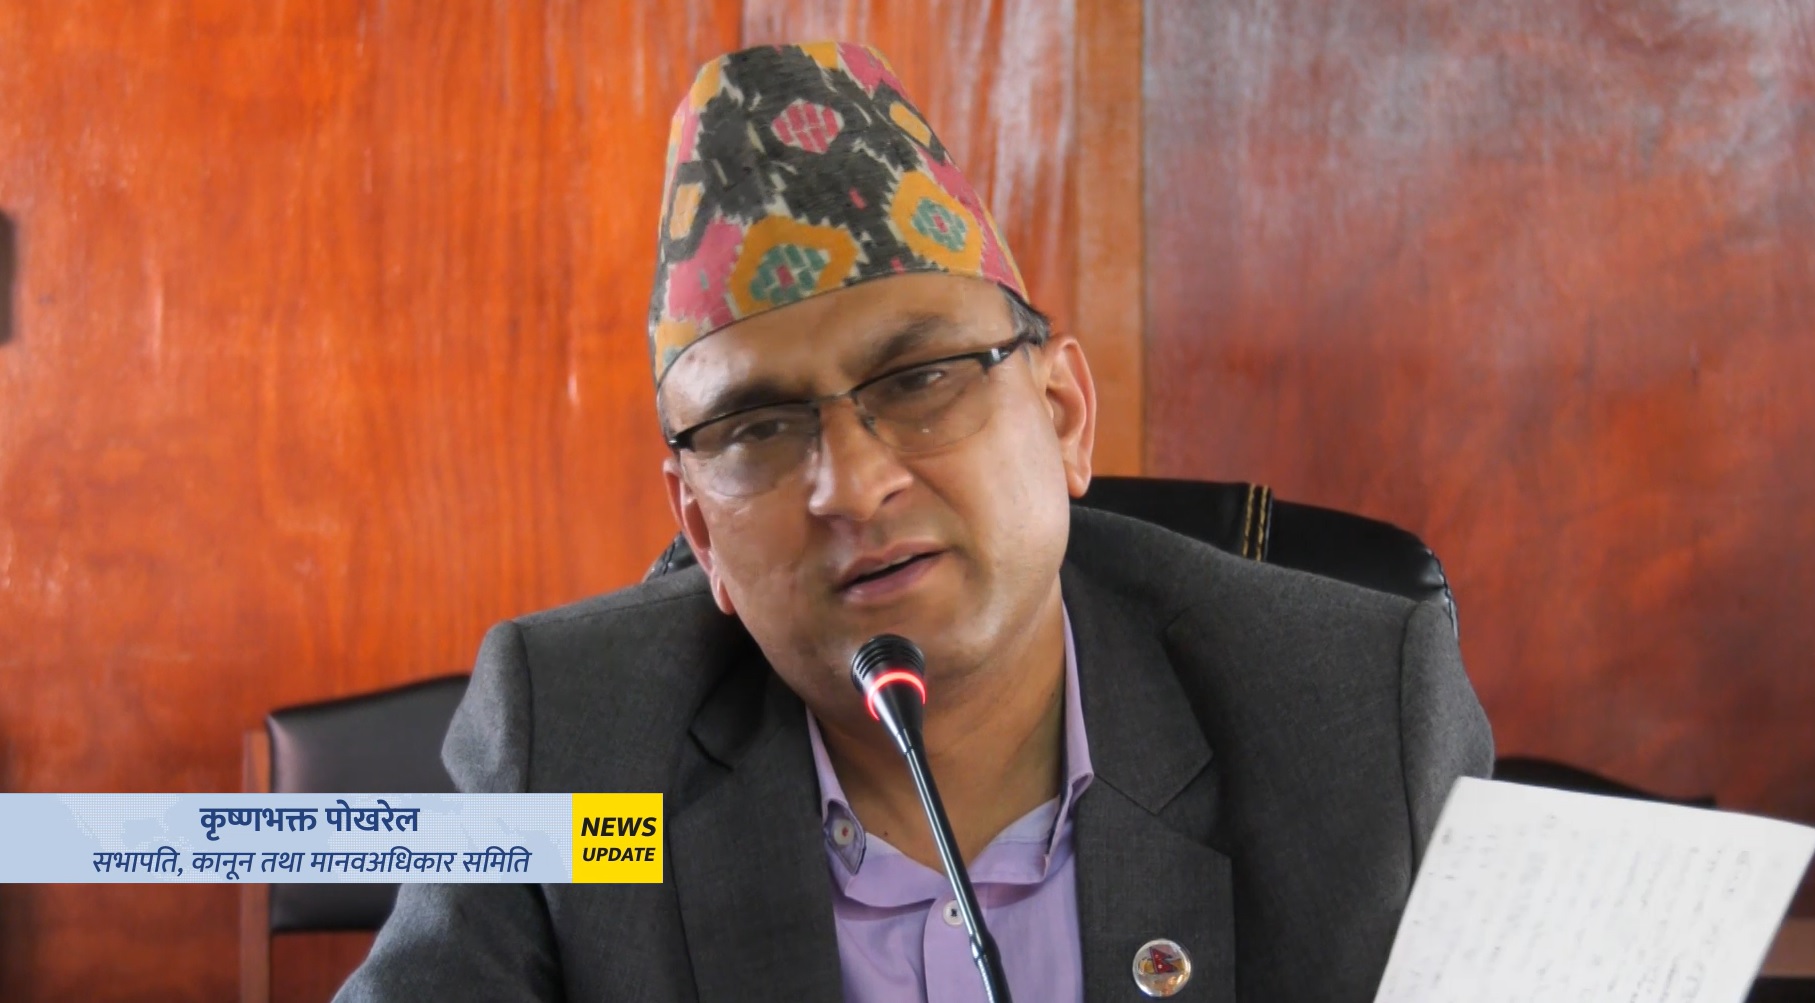 नेपाल प्रहरीमा दलित सेल स्थापना गर्न संसदीय समितिको निर्देशन